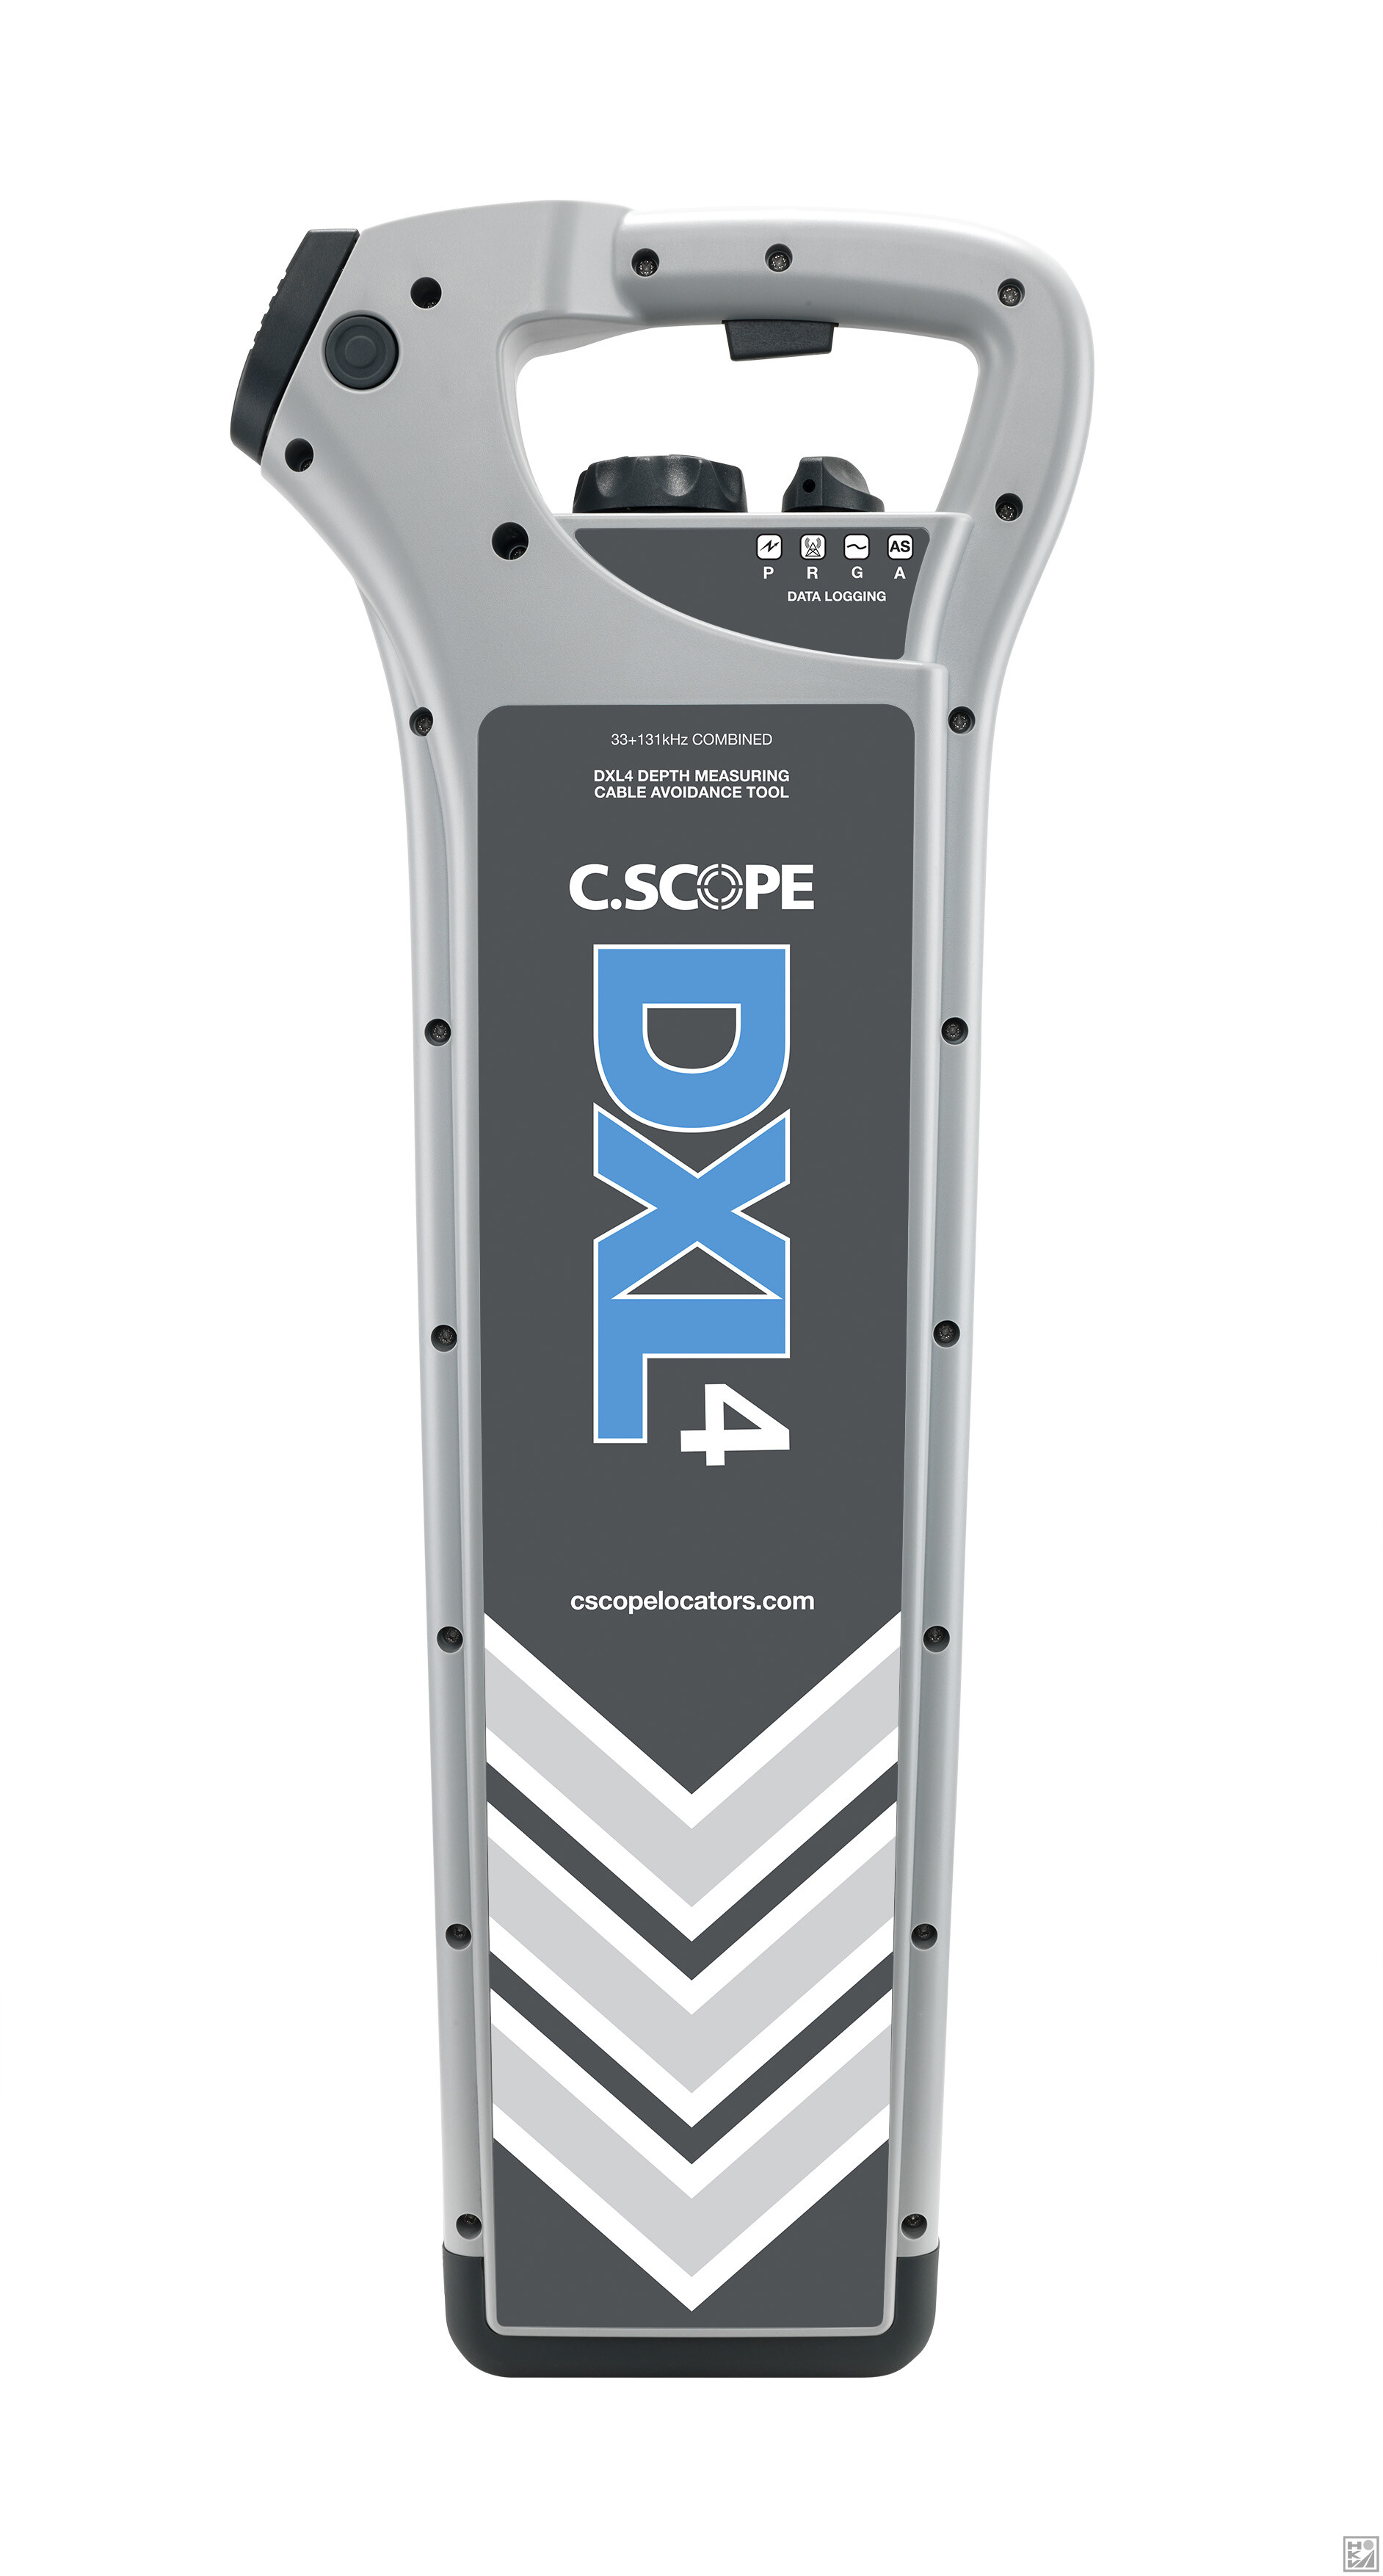 C-Scope DXL4-D kabeldetector tweevoudige frequentie